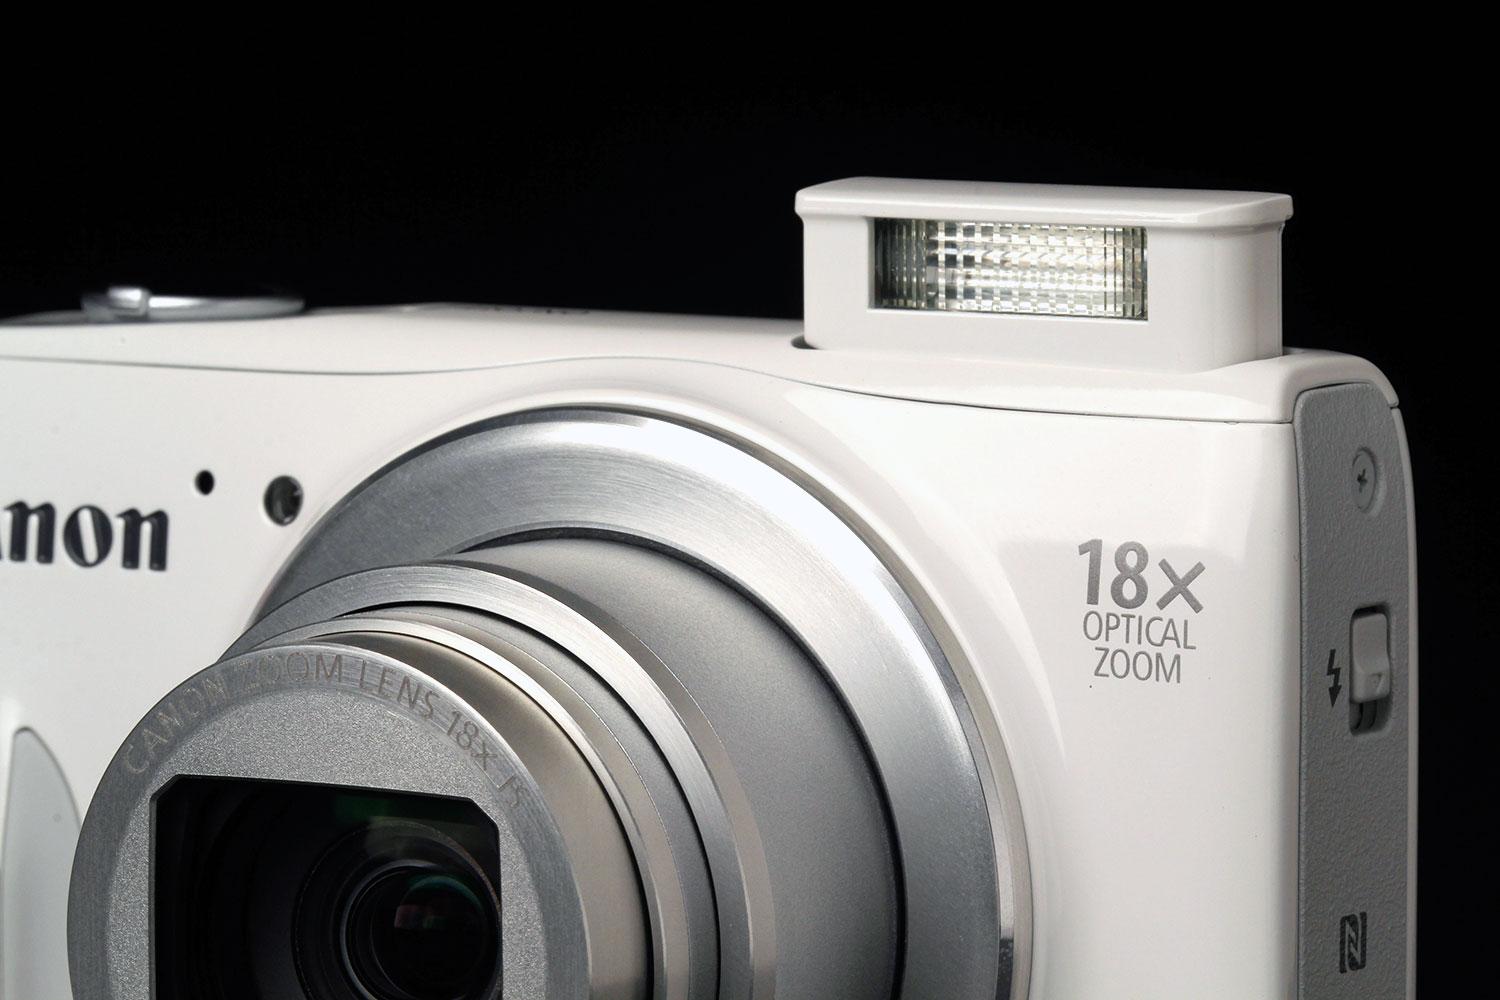 Canon PowerShot SX600 HS review | Digital Trends